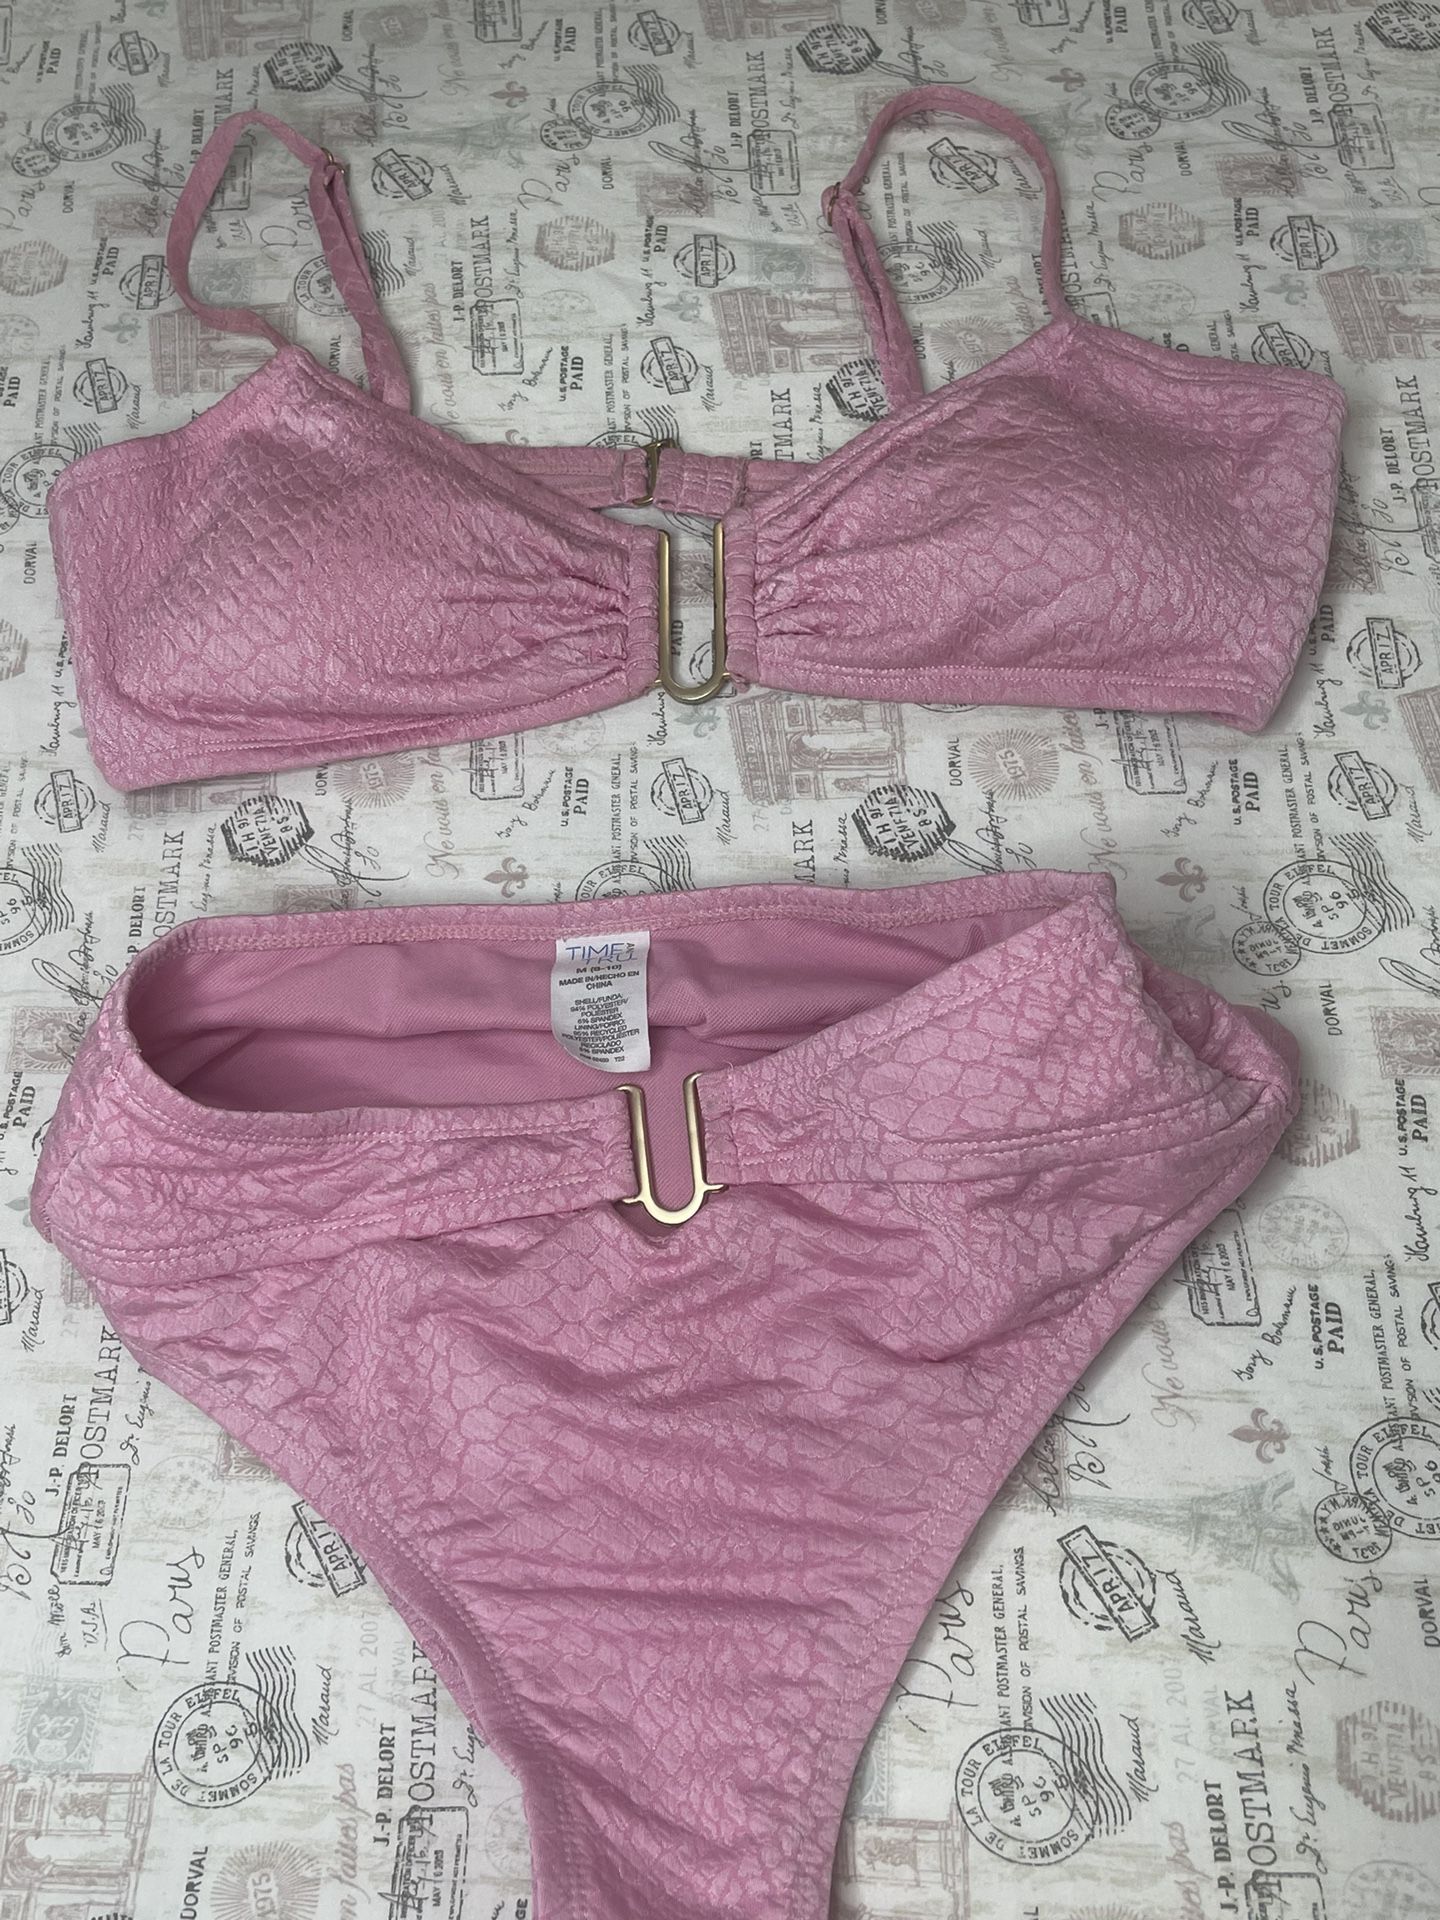 Sexy Pink Swimwear Size Medium Bikini Tanguista